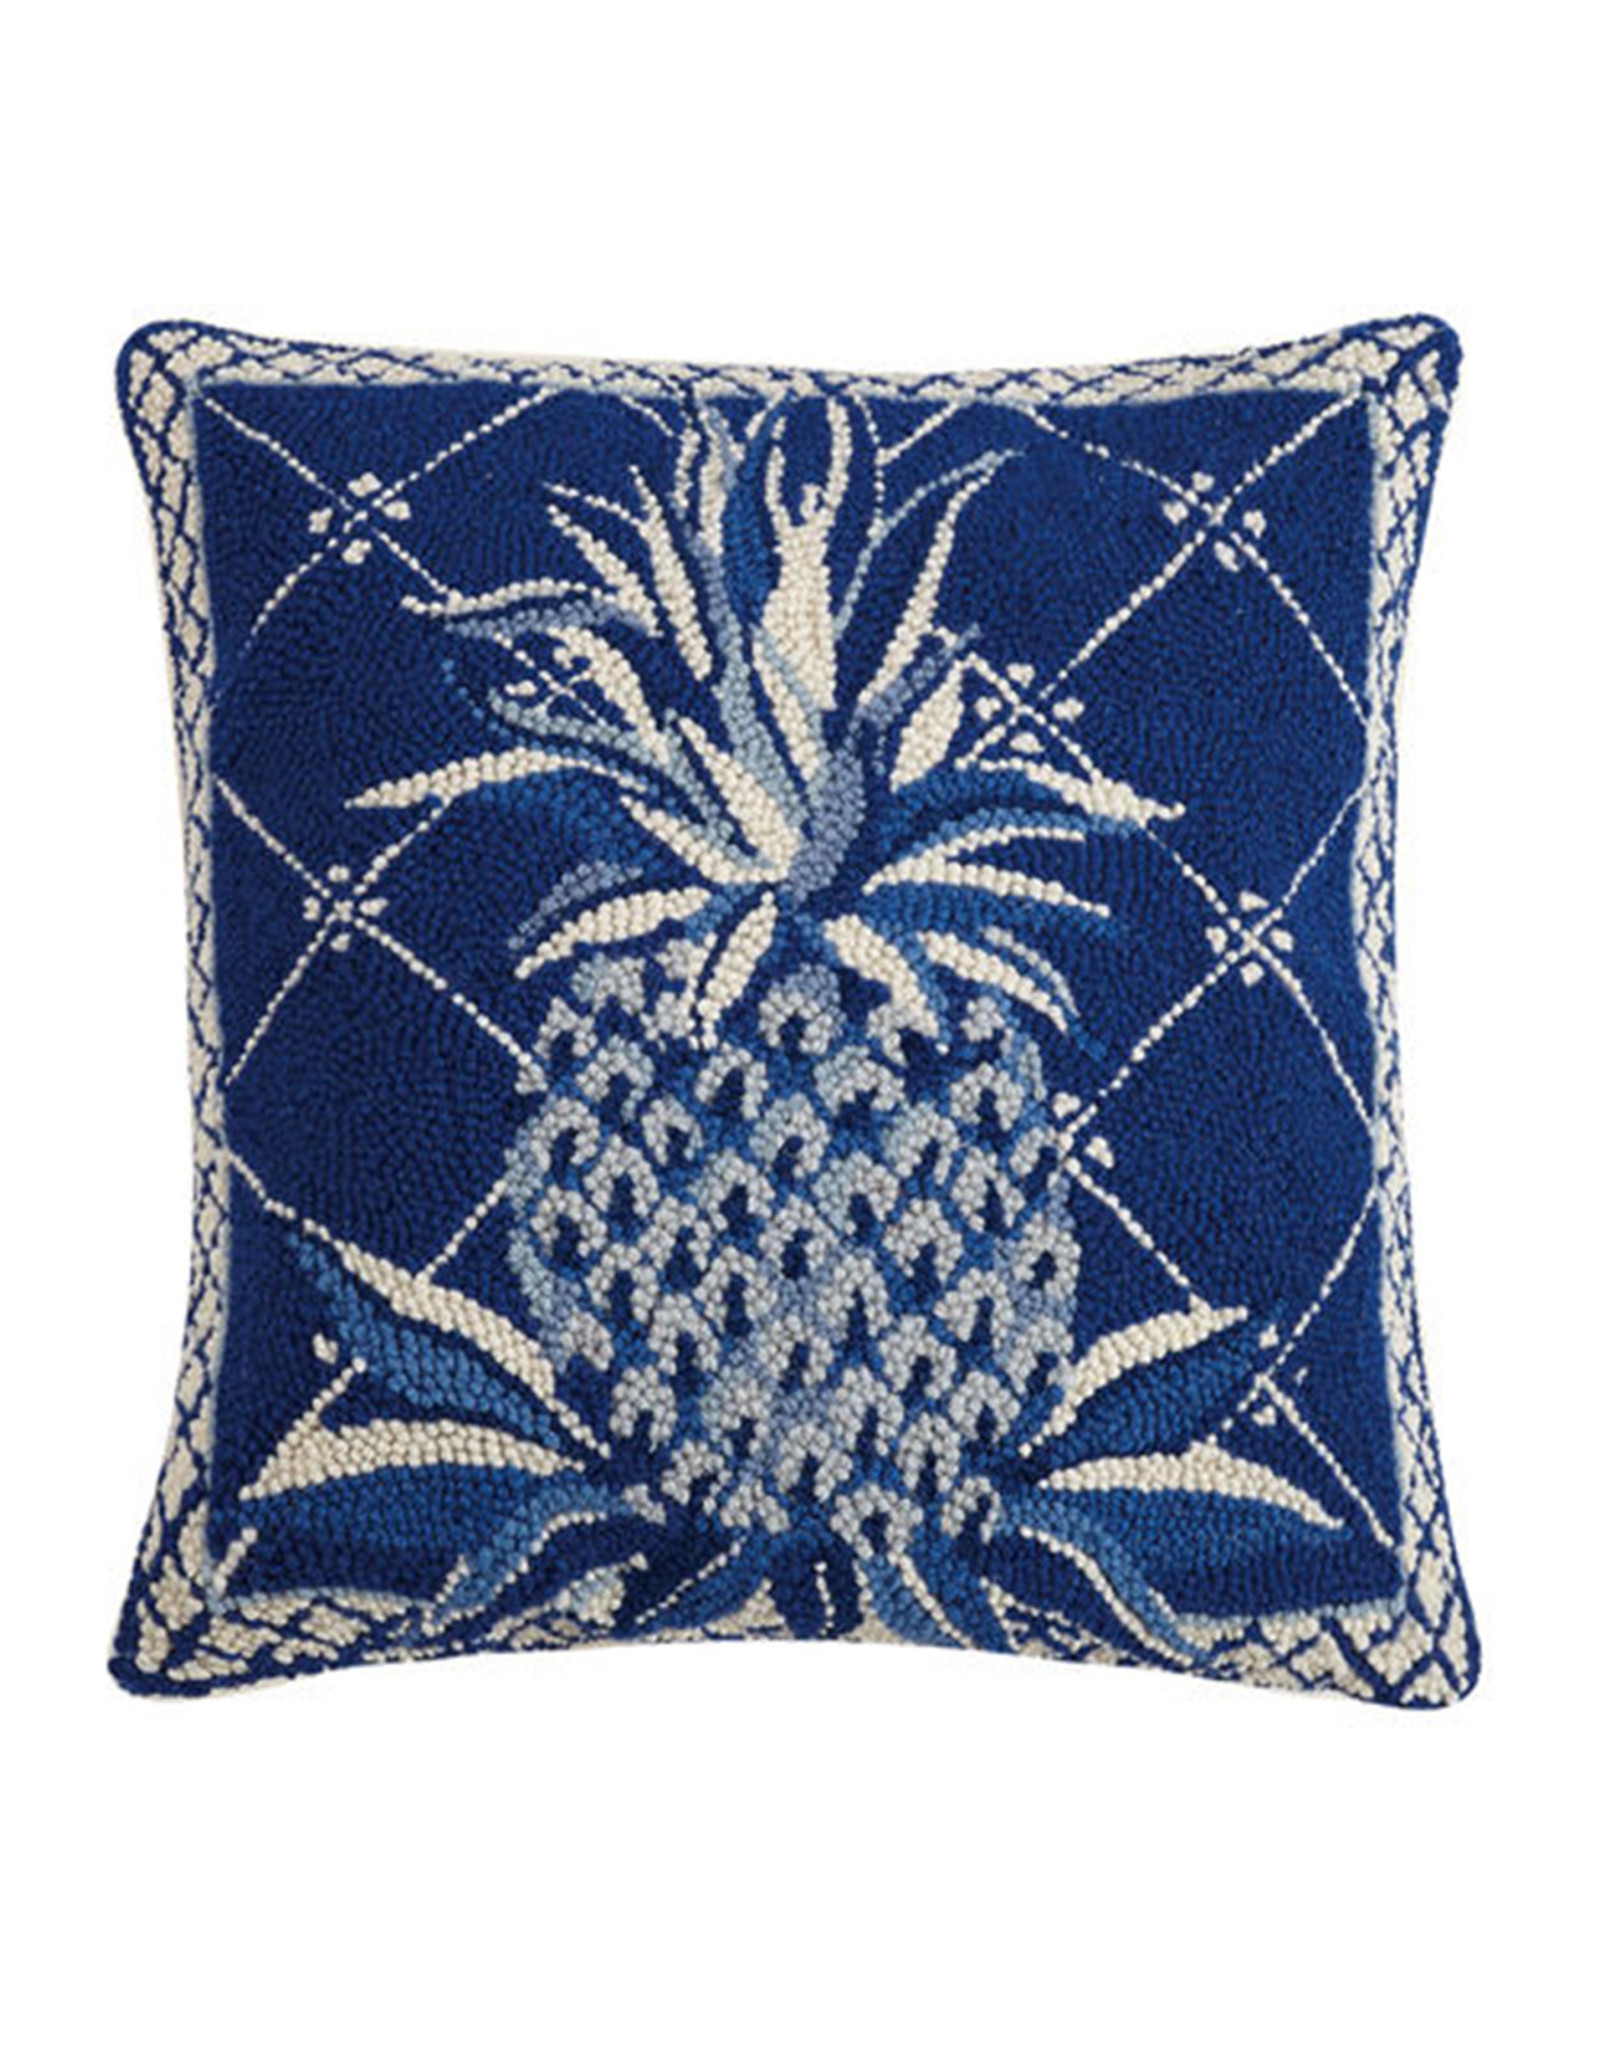 Blue Pineapple Hook Pillow - 18" x 18"